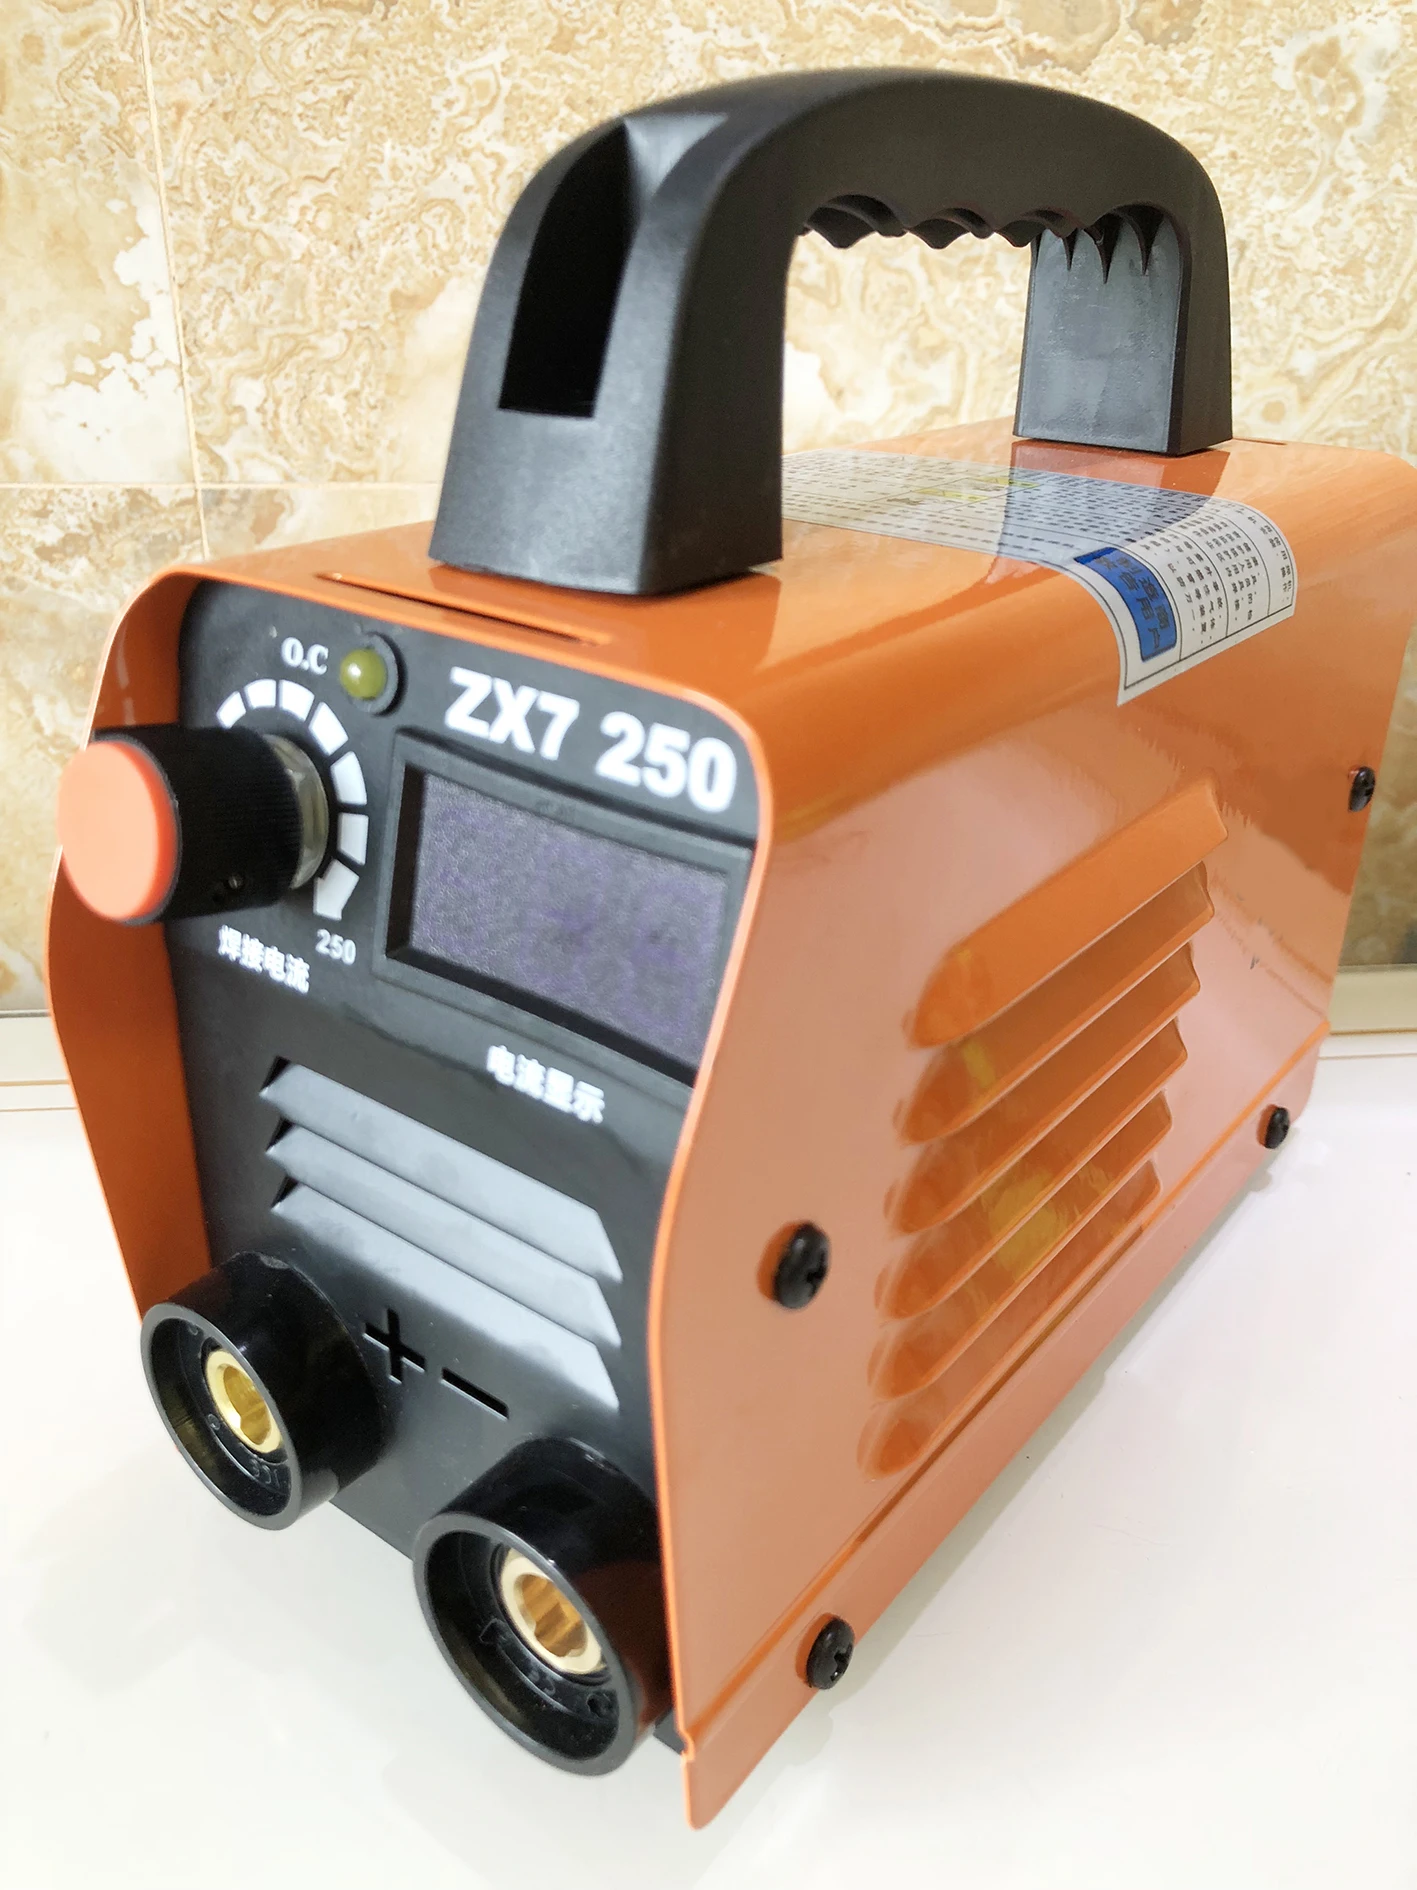 ZX7-250 220V 10-250A портативный мини ММА Электрический палку сварочный аппарат инверторный Сварочный электродуговой аппарат для обработки металлов сварочные инструменты